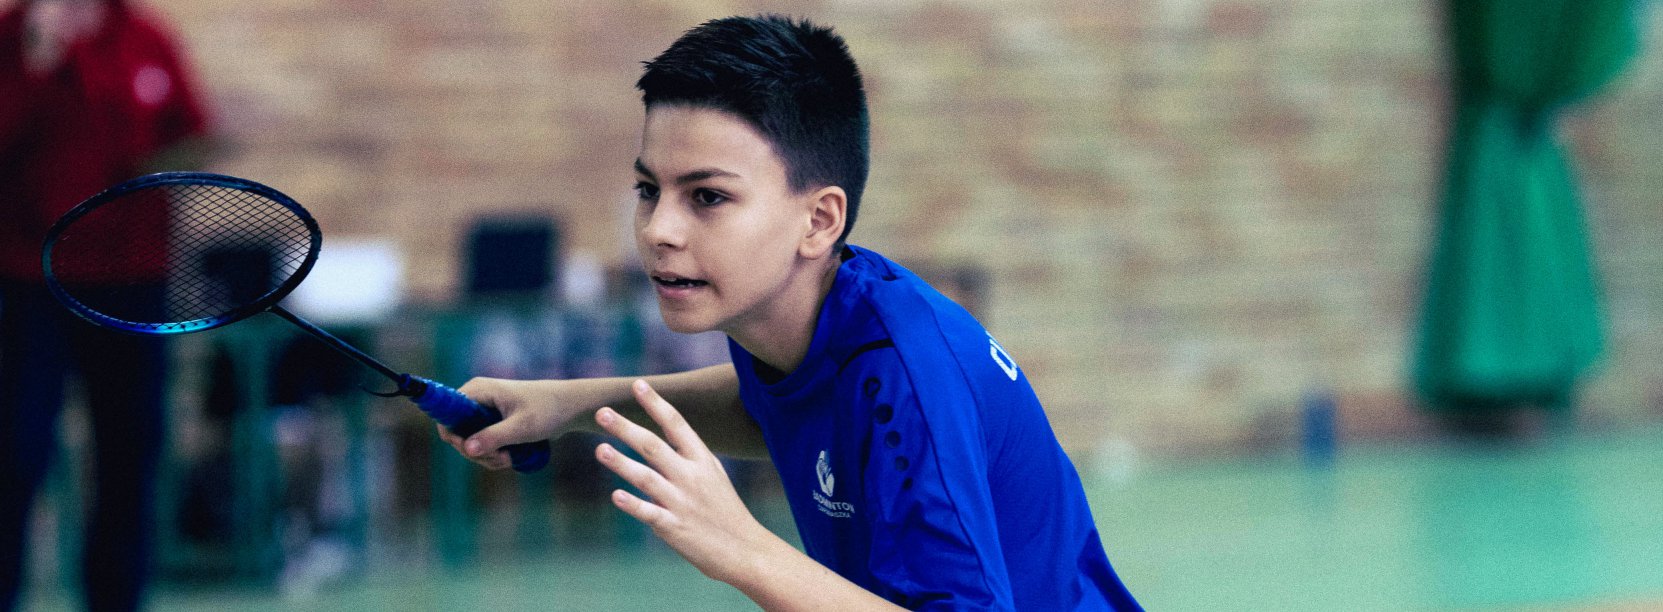 Chłopiec w ciemnoniebieskej koszulce z rakieta do badmintona